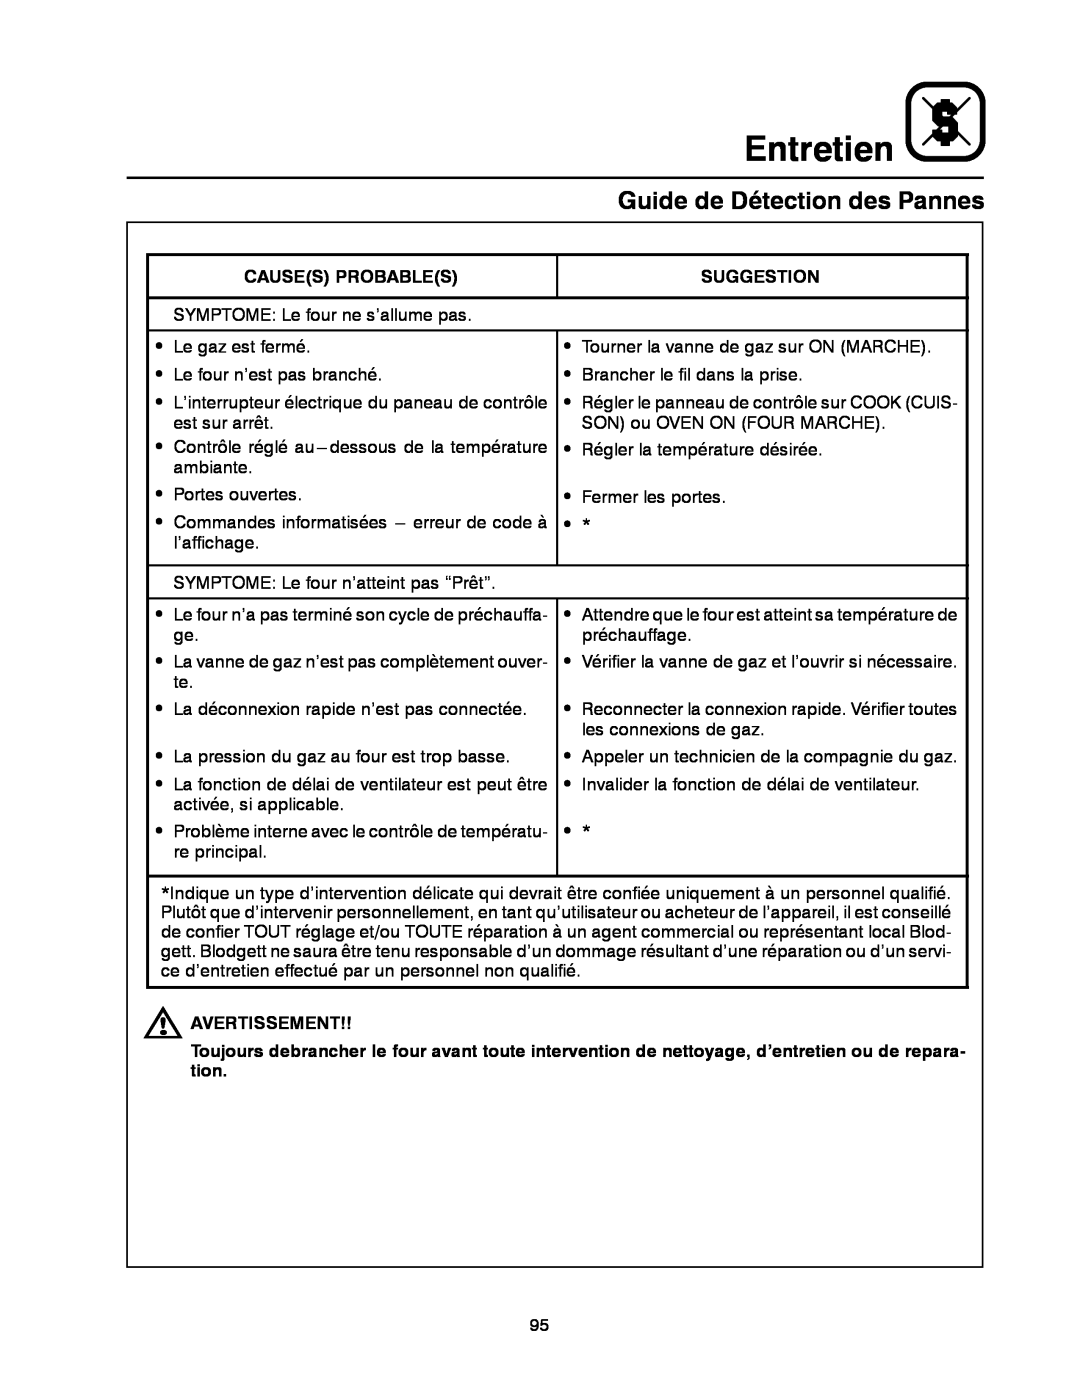 Blodgett DFG-100, DFG-200 manual Guide de Détection des Pannes, Entretien 